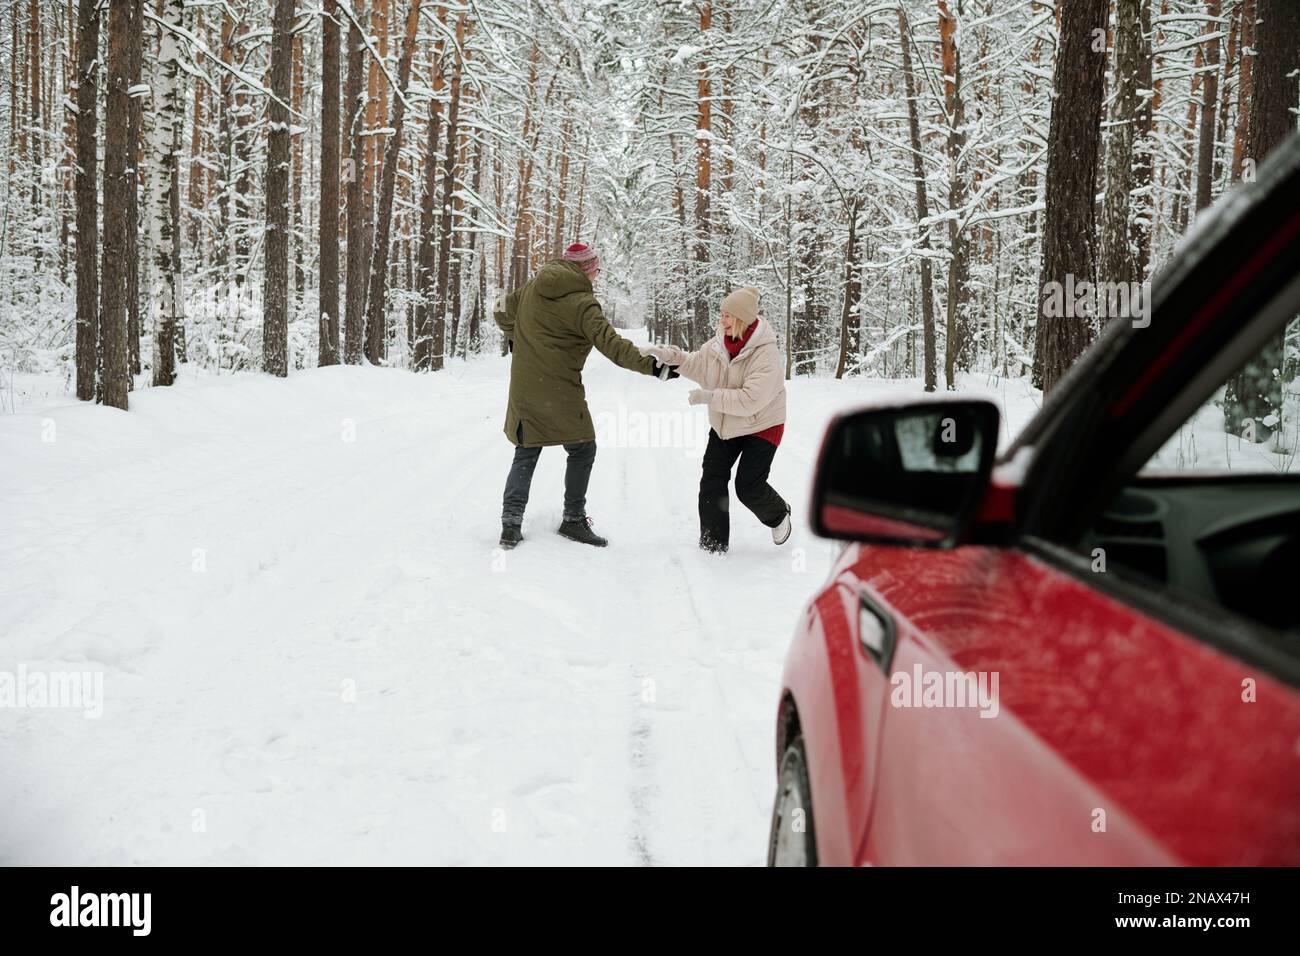 Reifer Mann und Frau, die auf der Straße im schneebedeckten Pinienwald miteinander spielen und ihre Reise aufs Land genießen Stockfoto